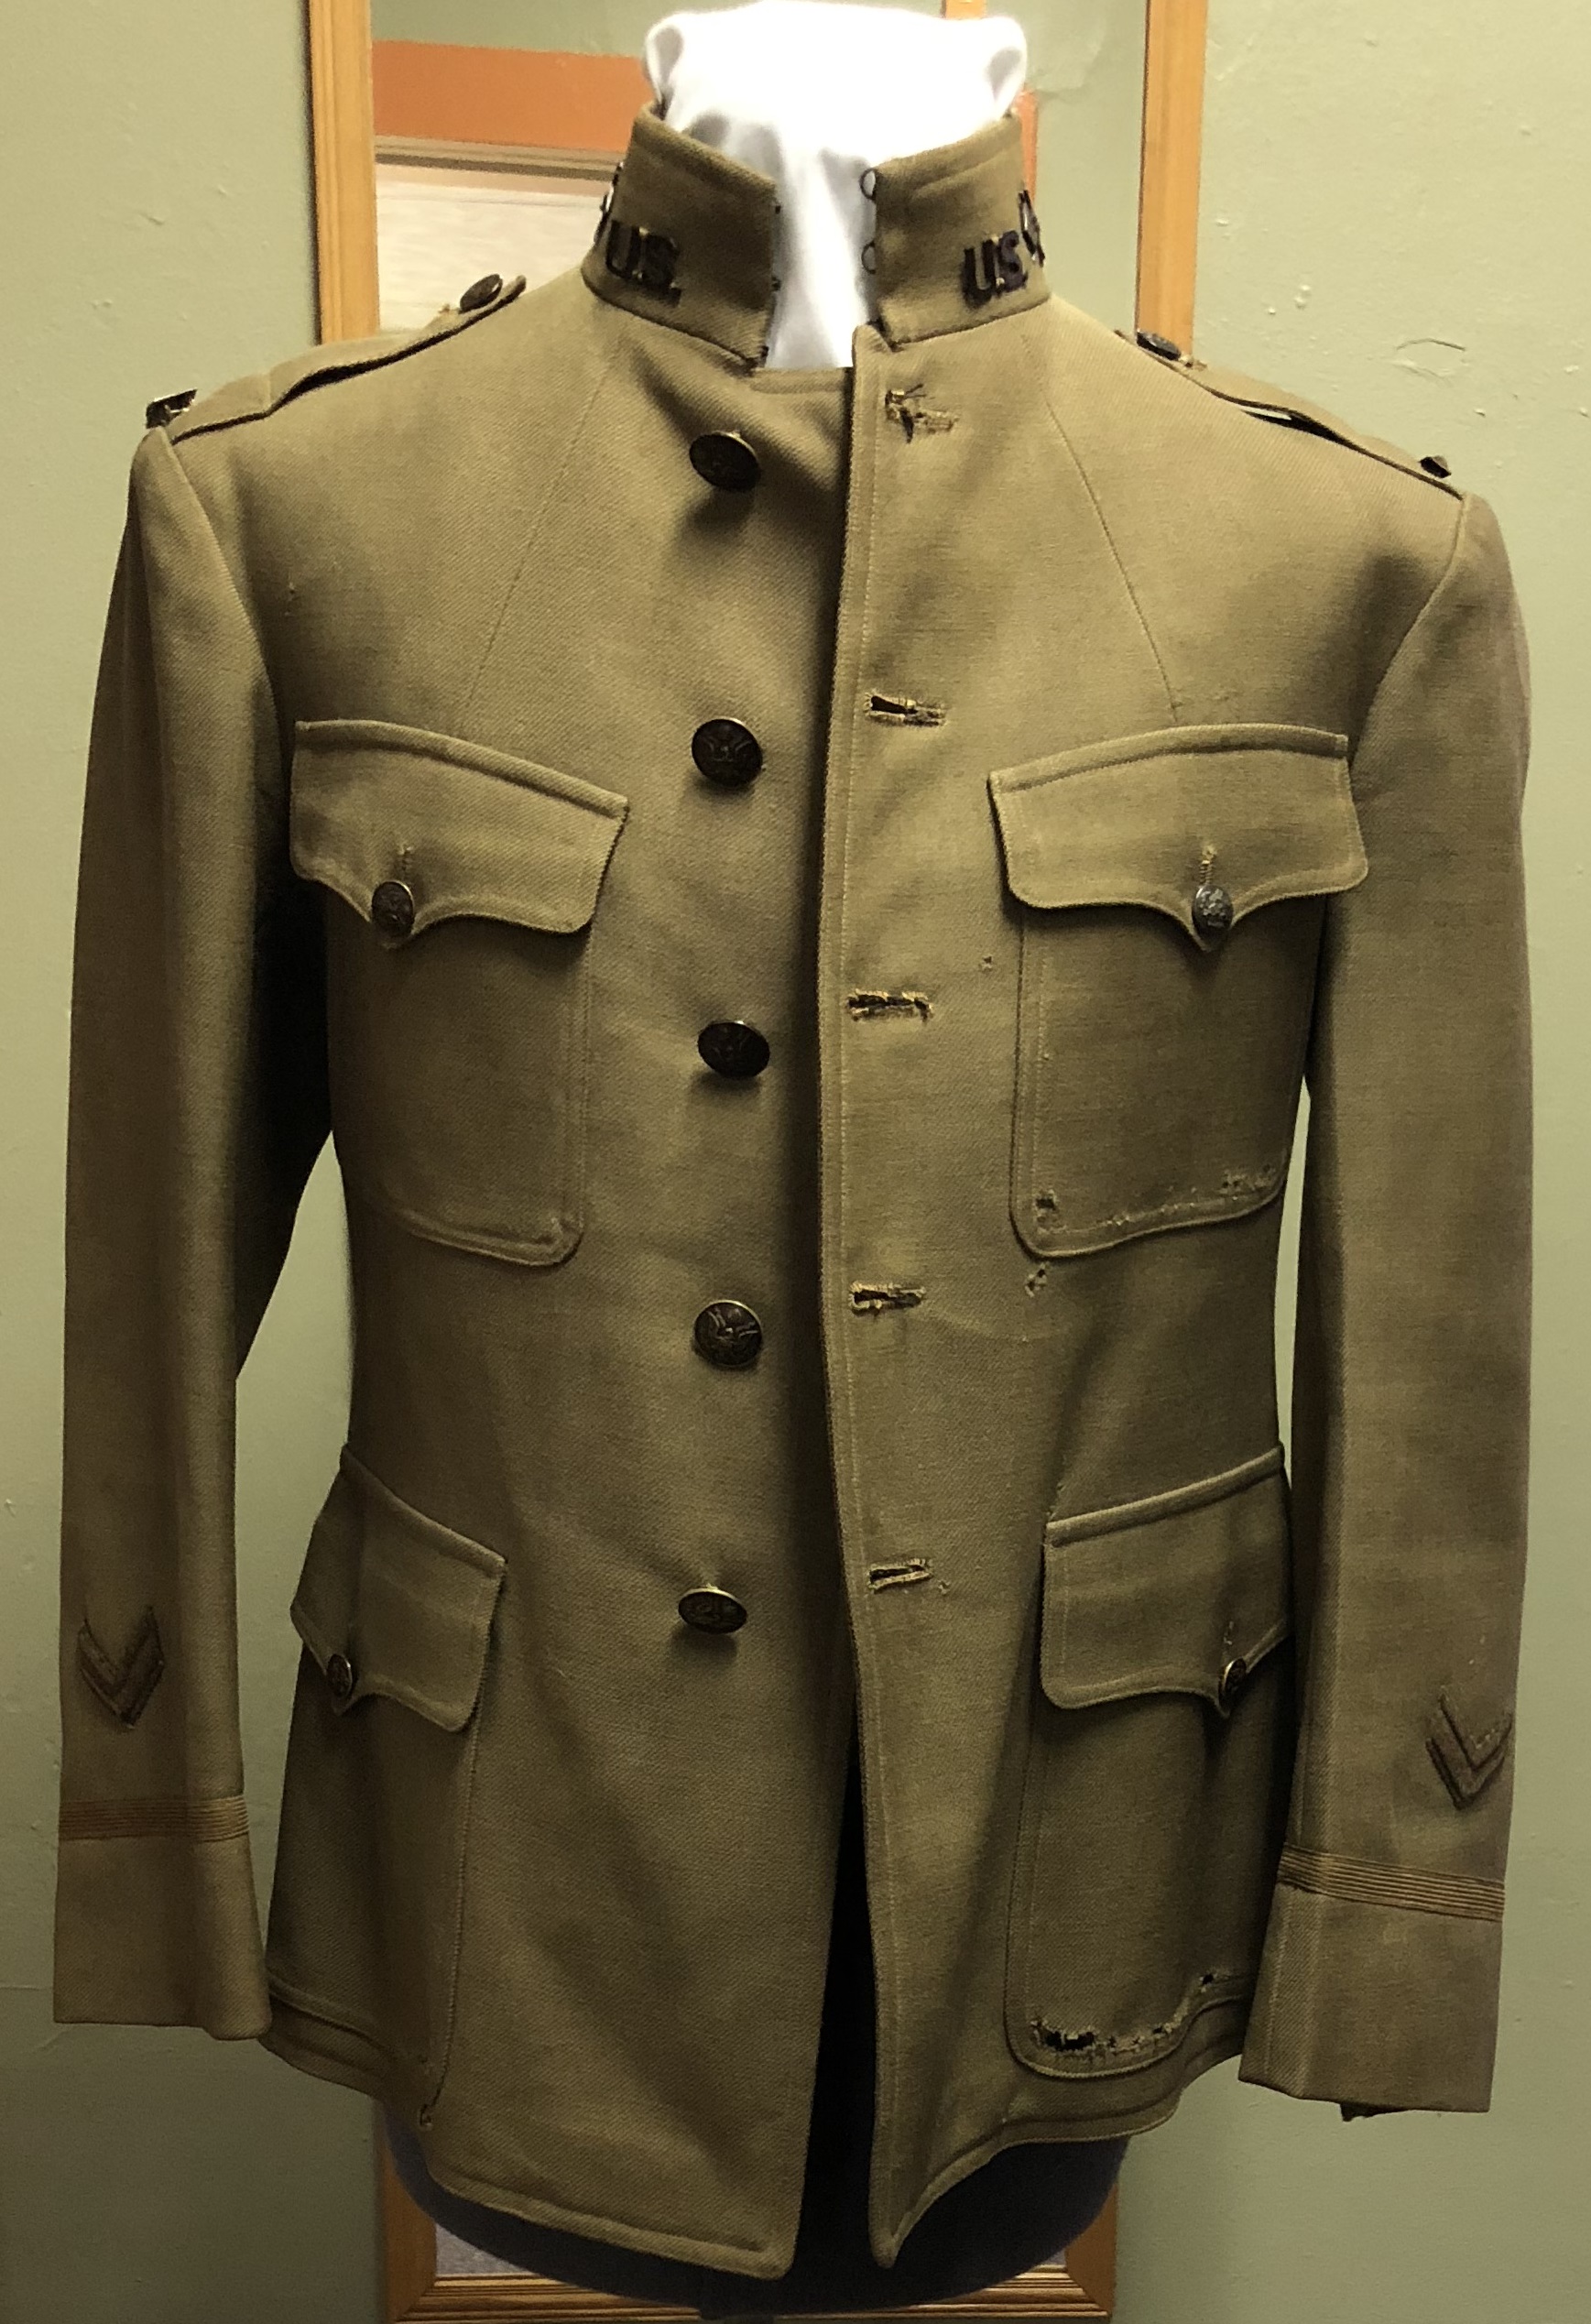 Details about   Men Jacket Pants Suit Military Coat Tactical Trousers Combat Uniform Army Green 